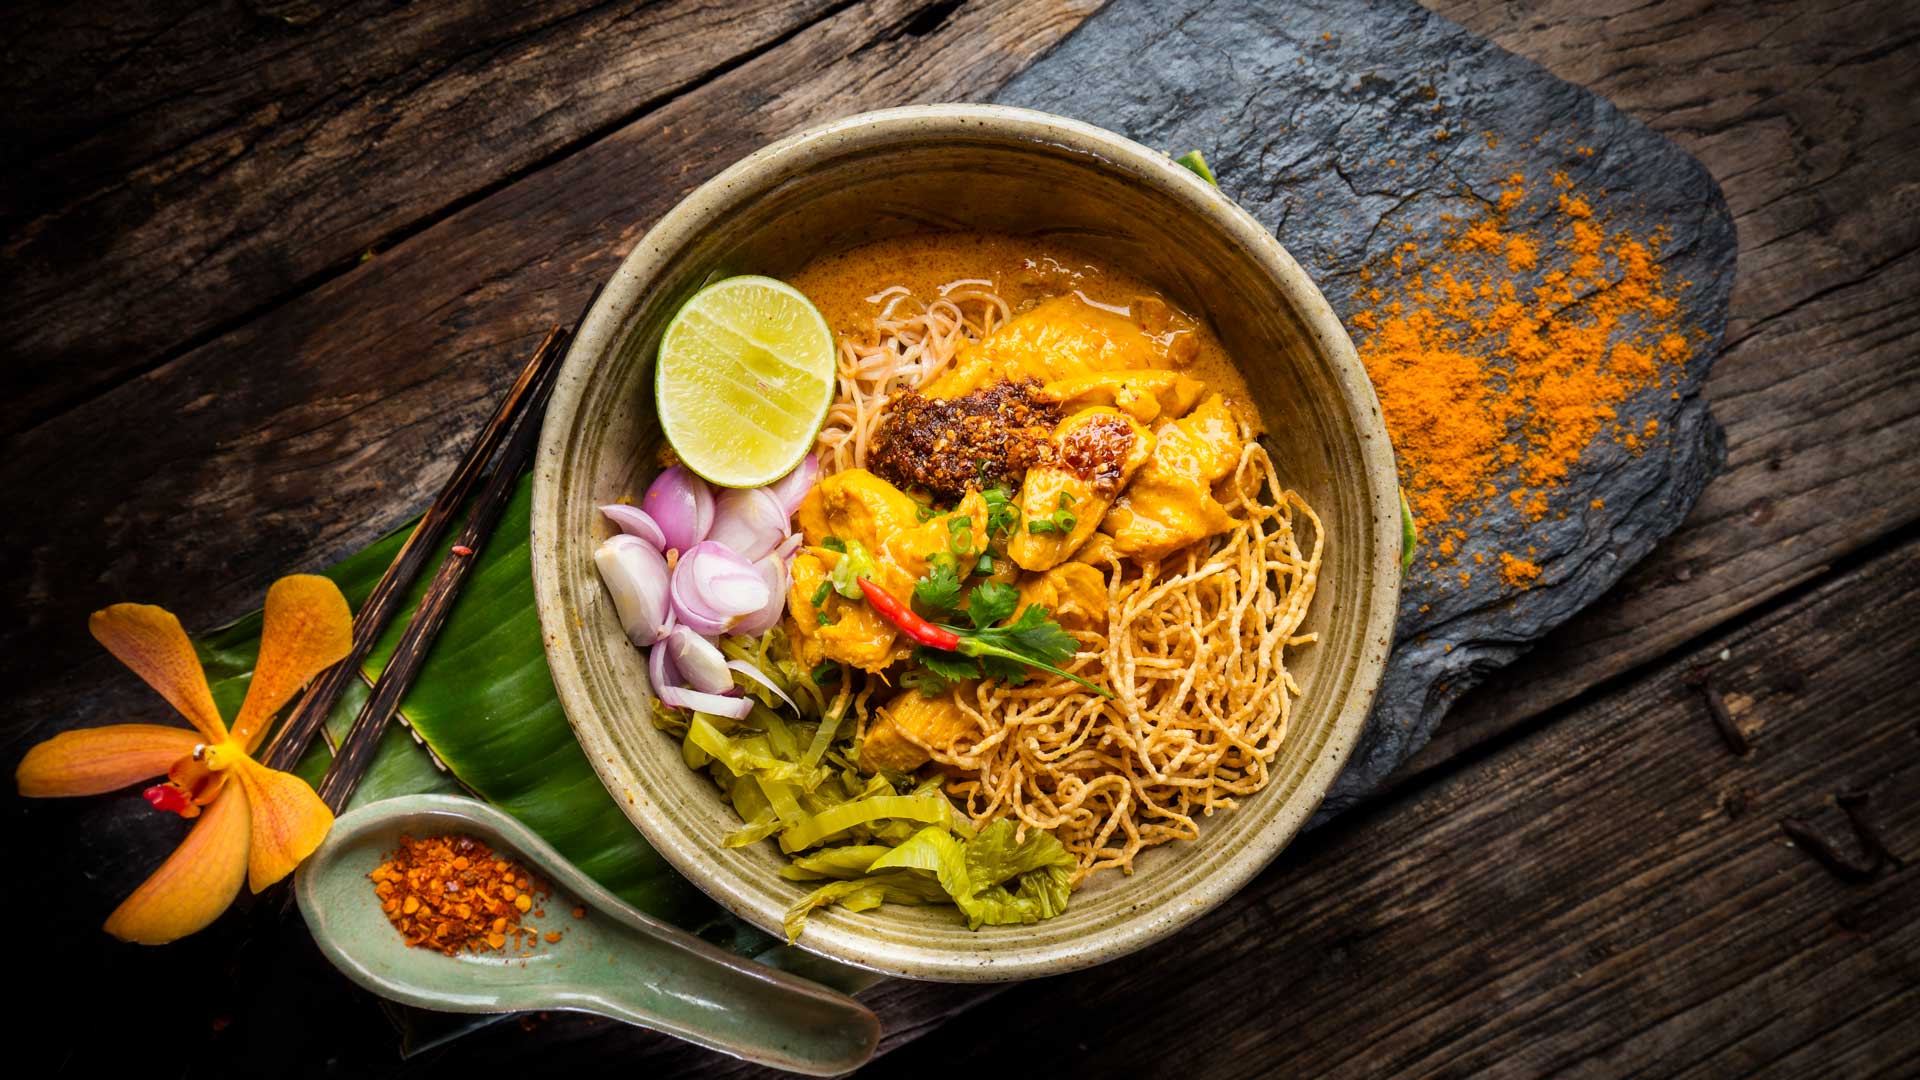 Taste of Thailand Food Festival